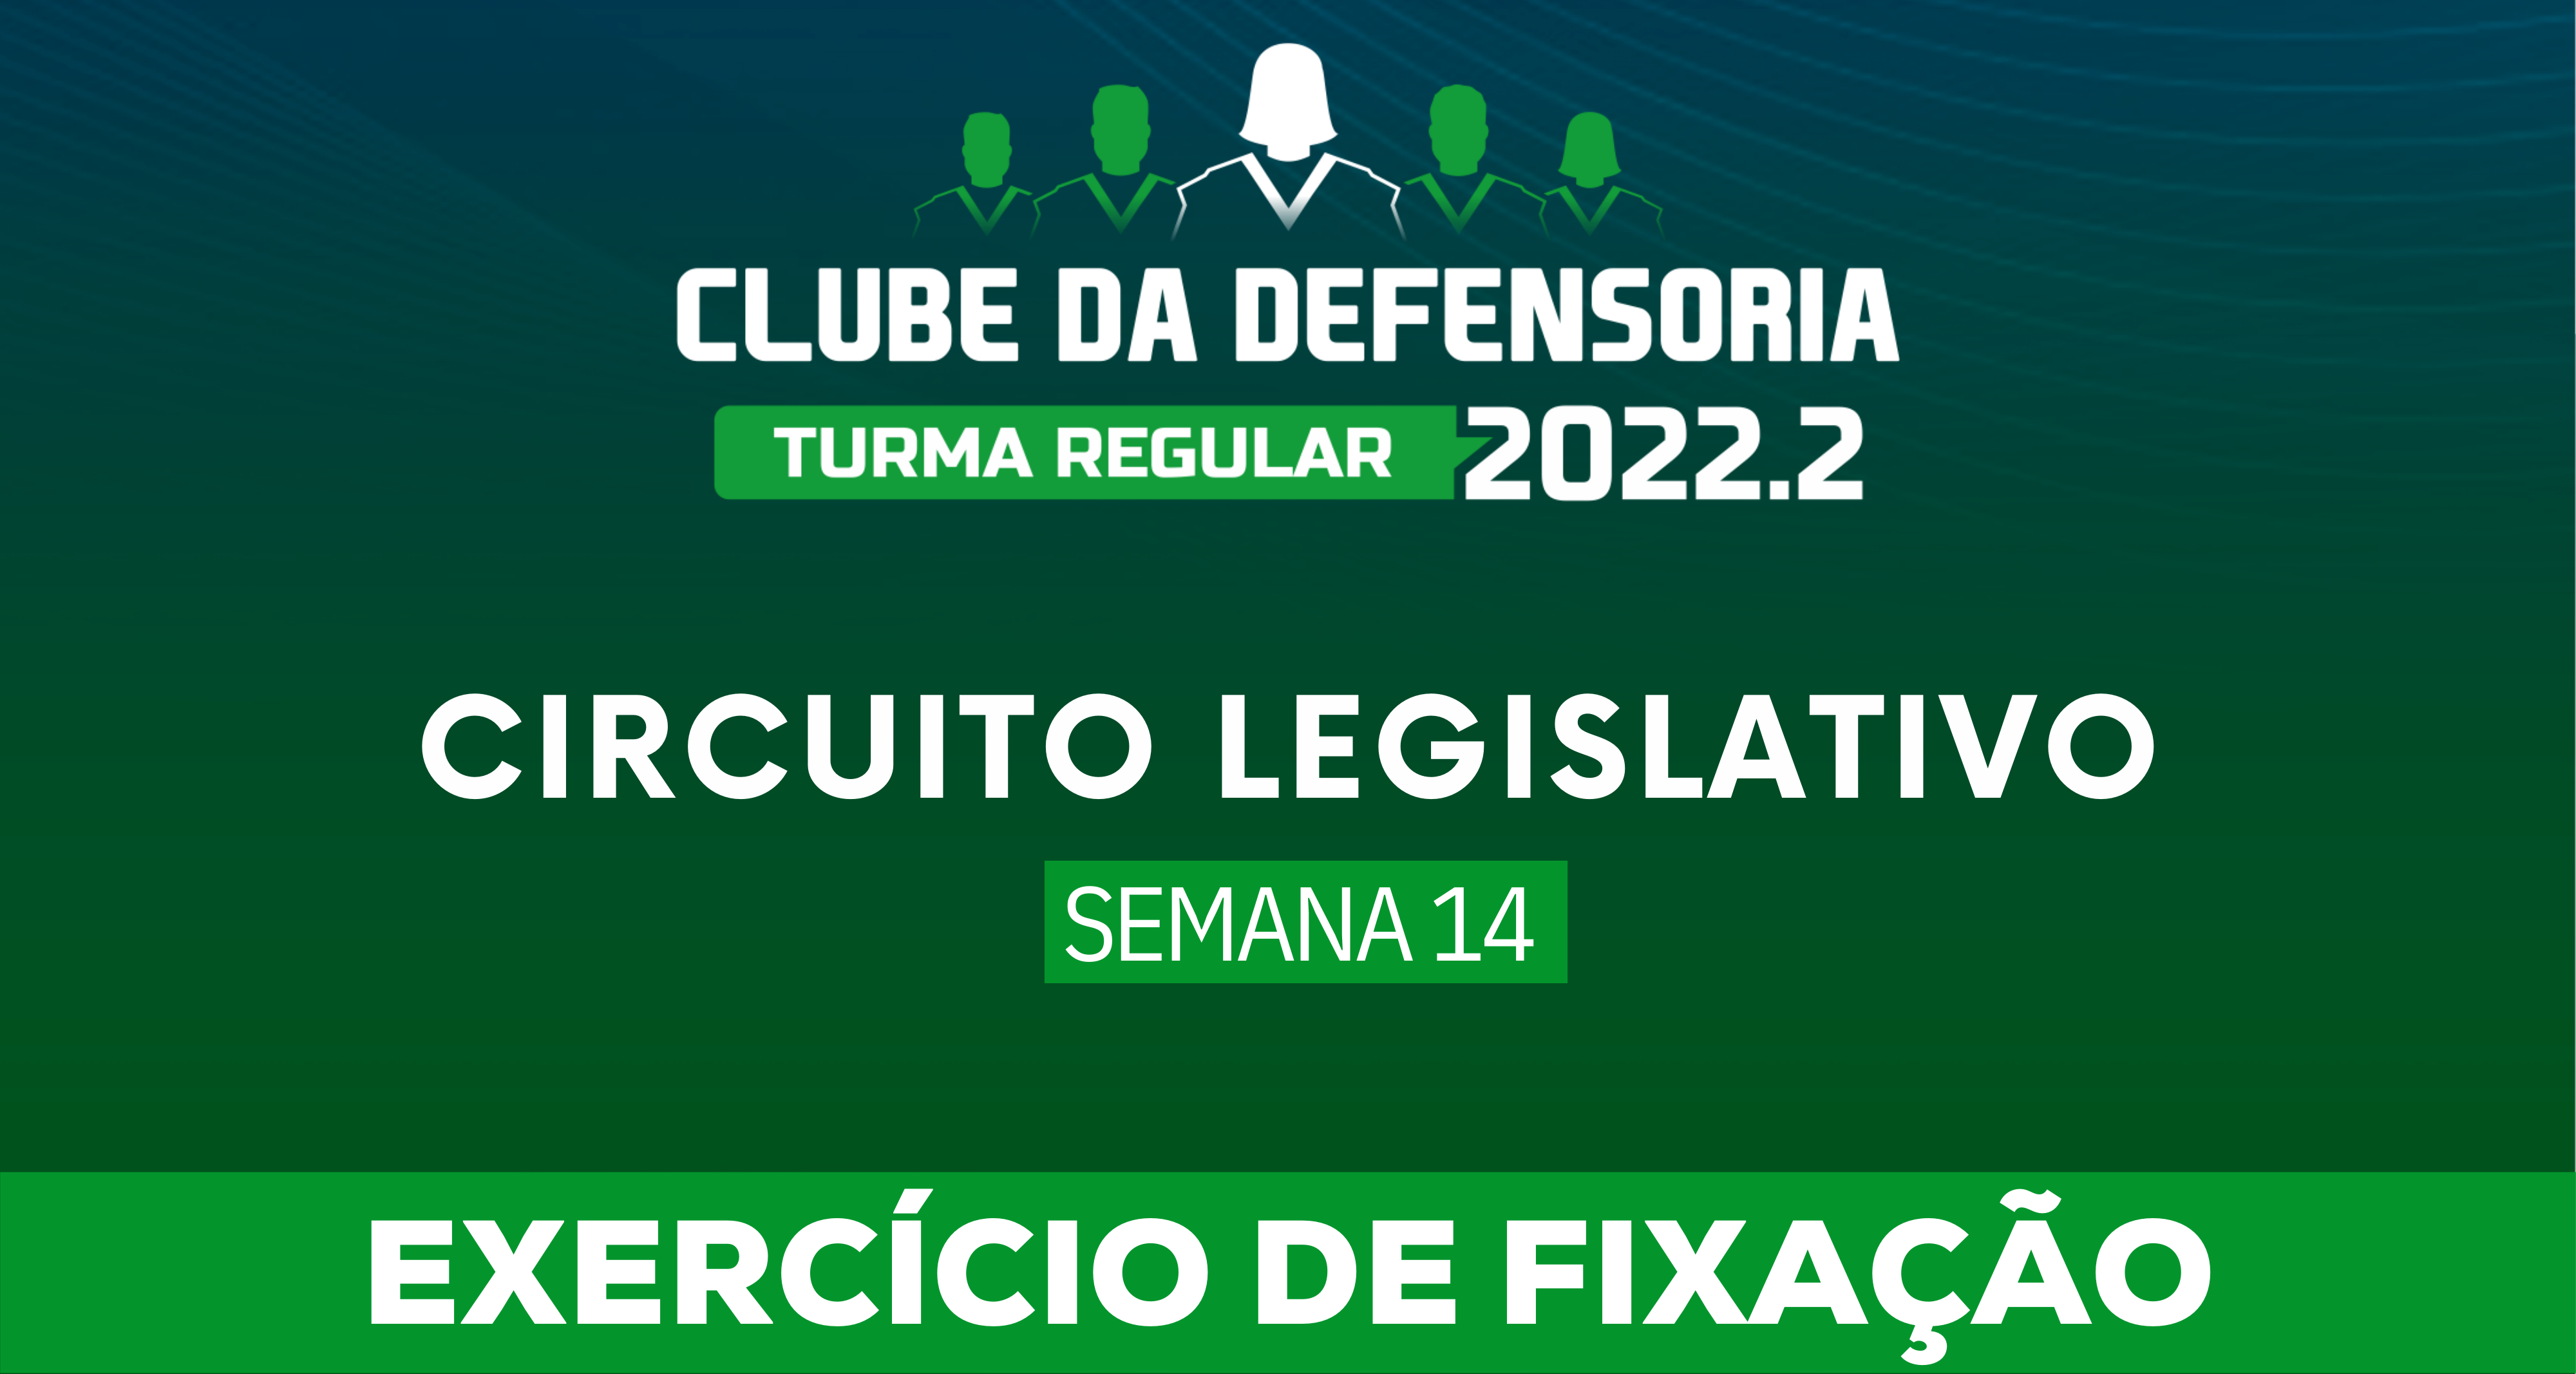 Circuito Legislativo 2022.2 (Clube da Defensoria - Semana 14)